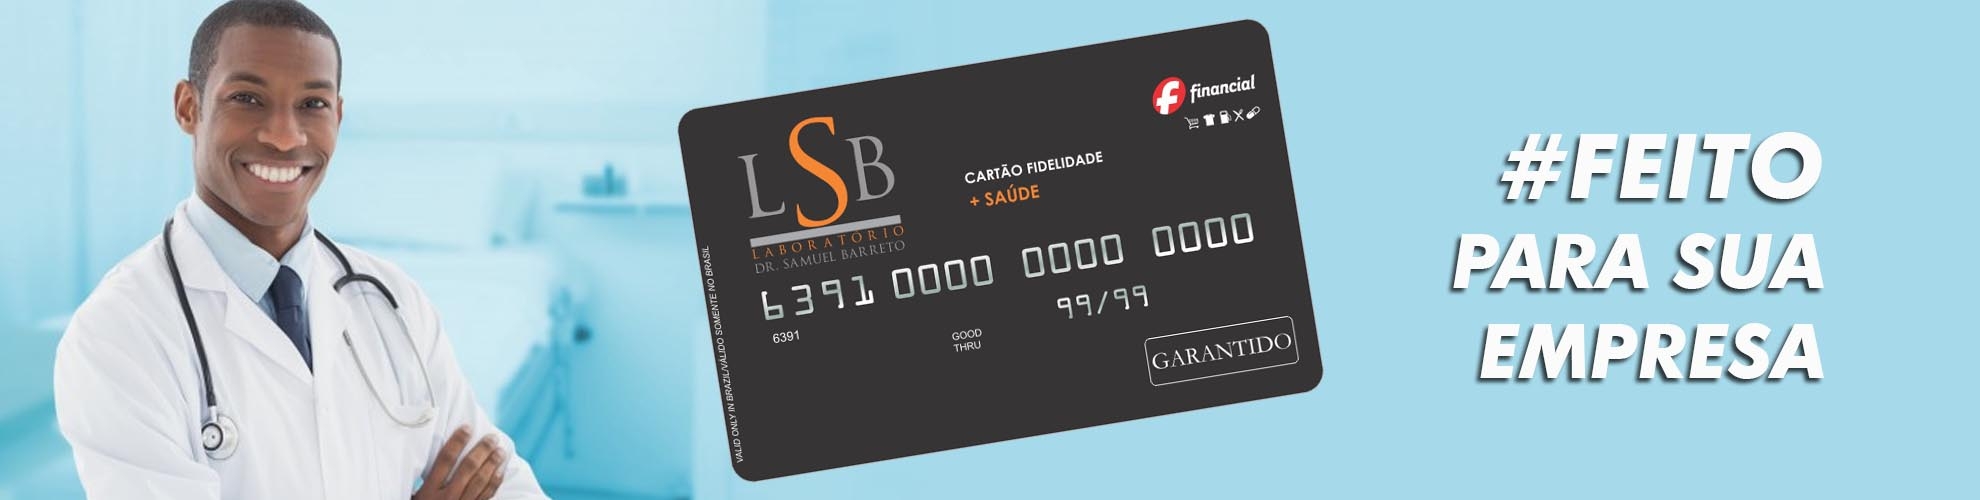 Cartão LSB - Crédito